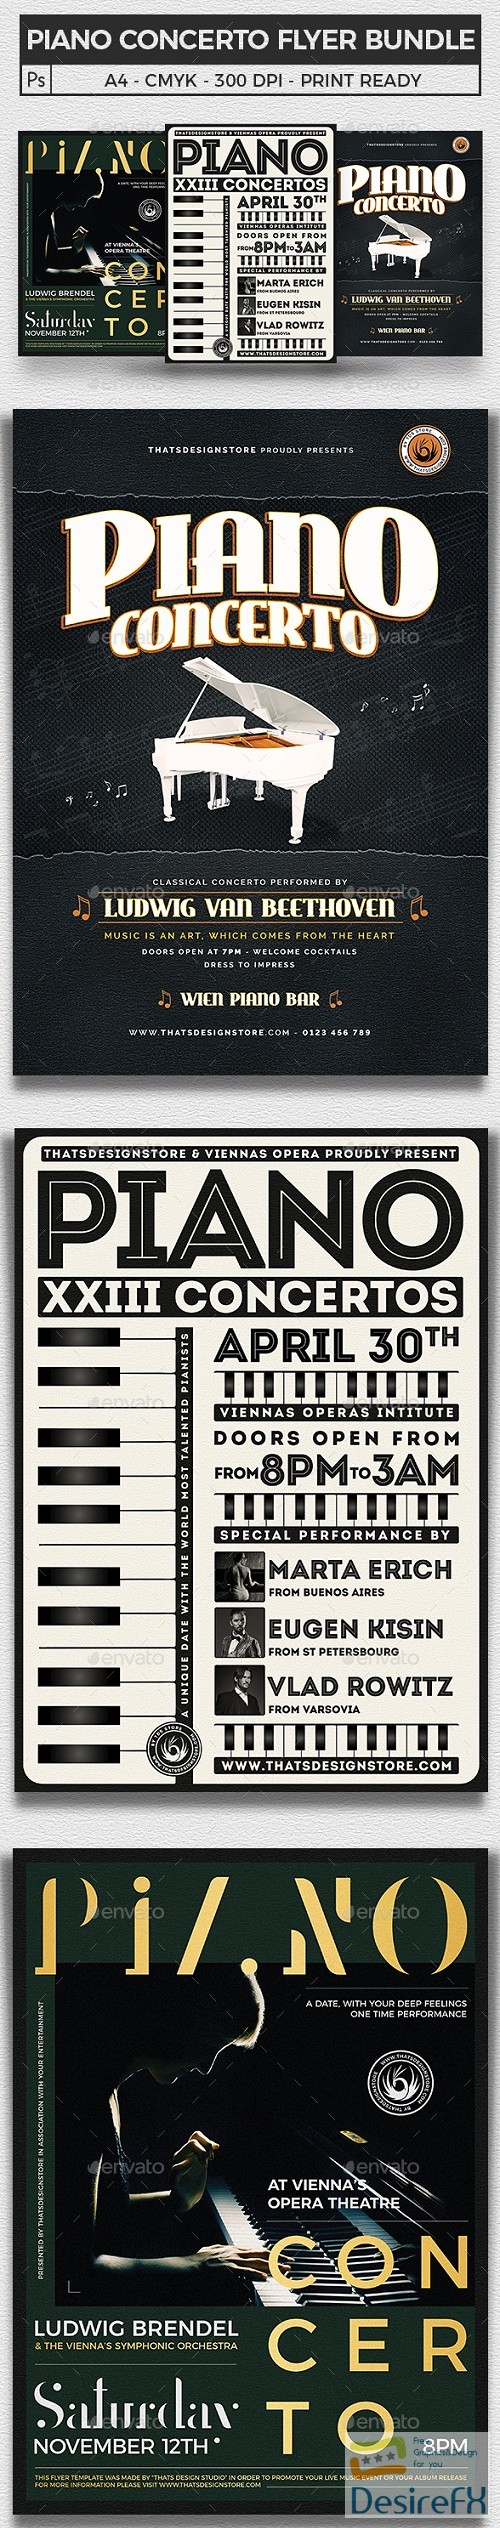 Piano Concerto Flyer Bundle - 21964267 - 2570953